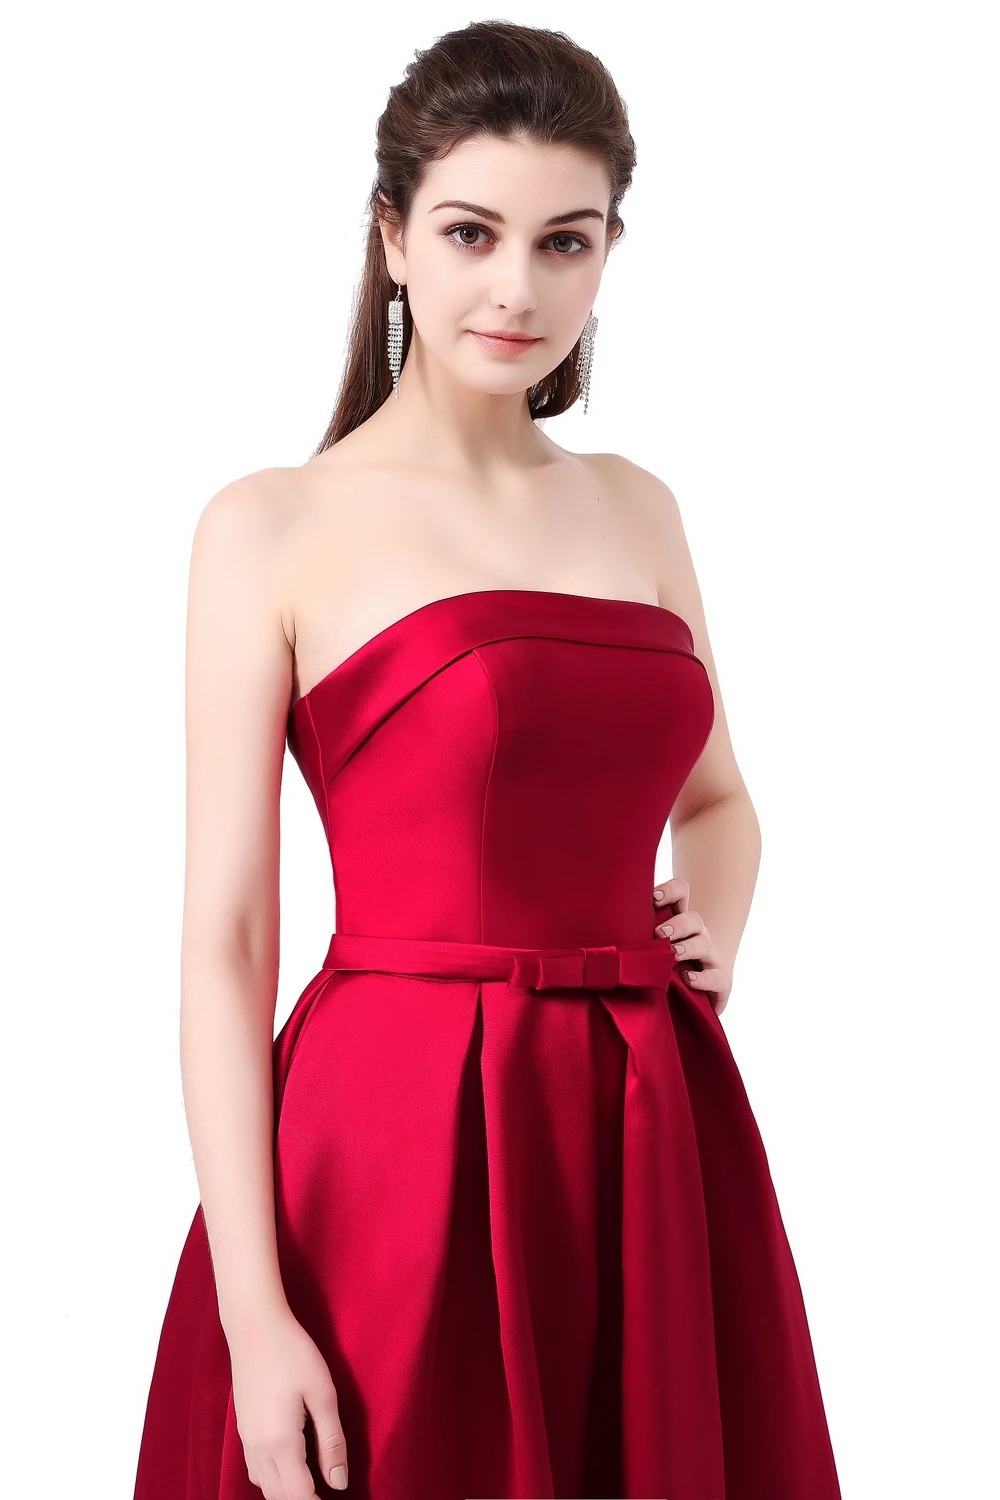 Vestido SSYFashion Formatura свадебное платье без бретелек без рукавов цвета красного вина Danni тонкое длинное платье для выпускного вечера на заказ вечерние платья